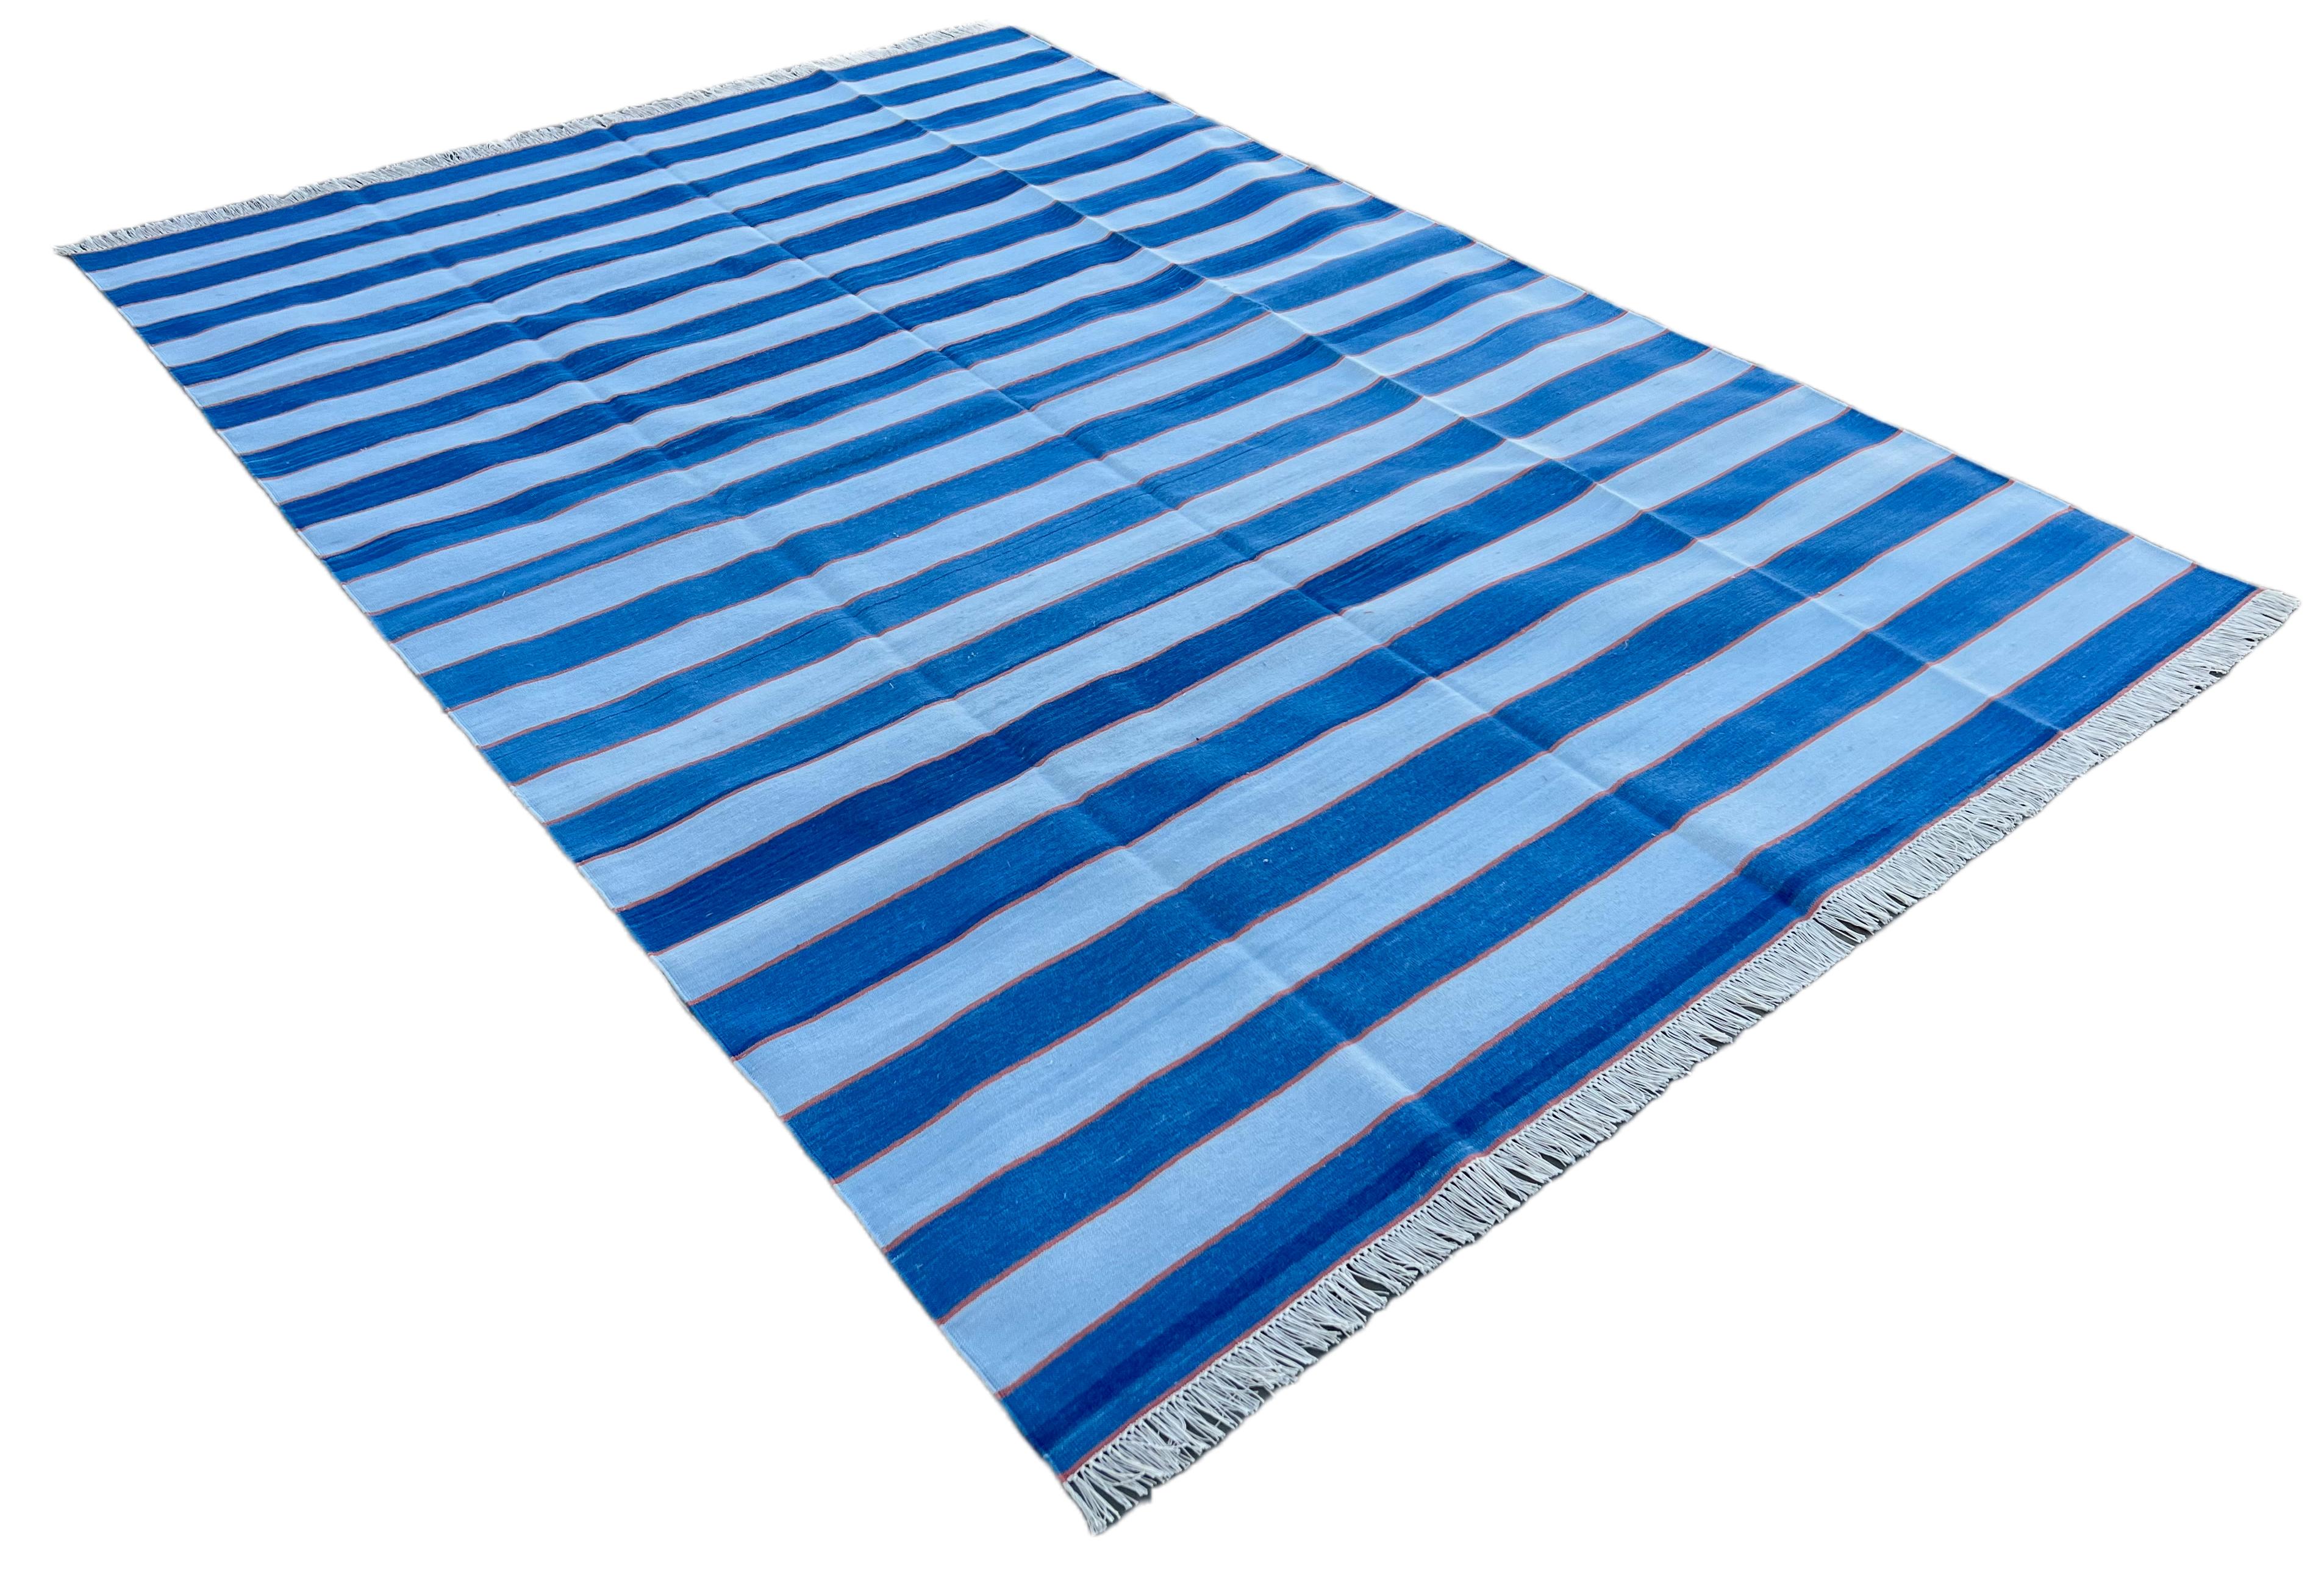 Baumwolle pflanzlich gefärbt Indigo Blau und Orange gestreift indischen Dhurrie Teppich-6'x9' 
Diese speziellen flachgewebten Dhurries werden aus 15-fachem Garn aus 100% Baumwolle handgewebt. Aufgrund der speziellen Fertigungstechniken, die zur